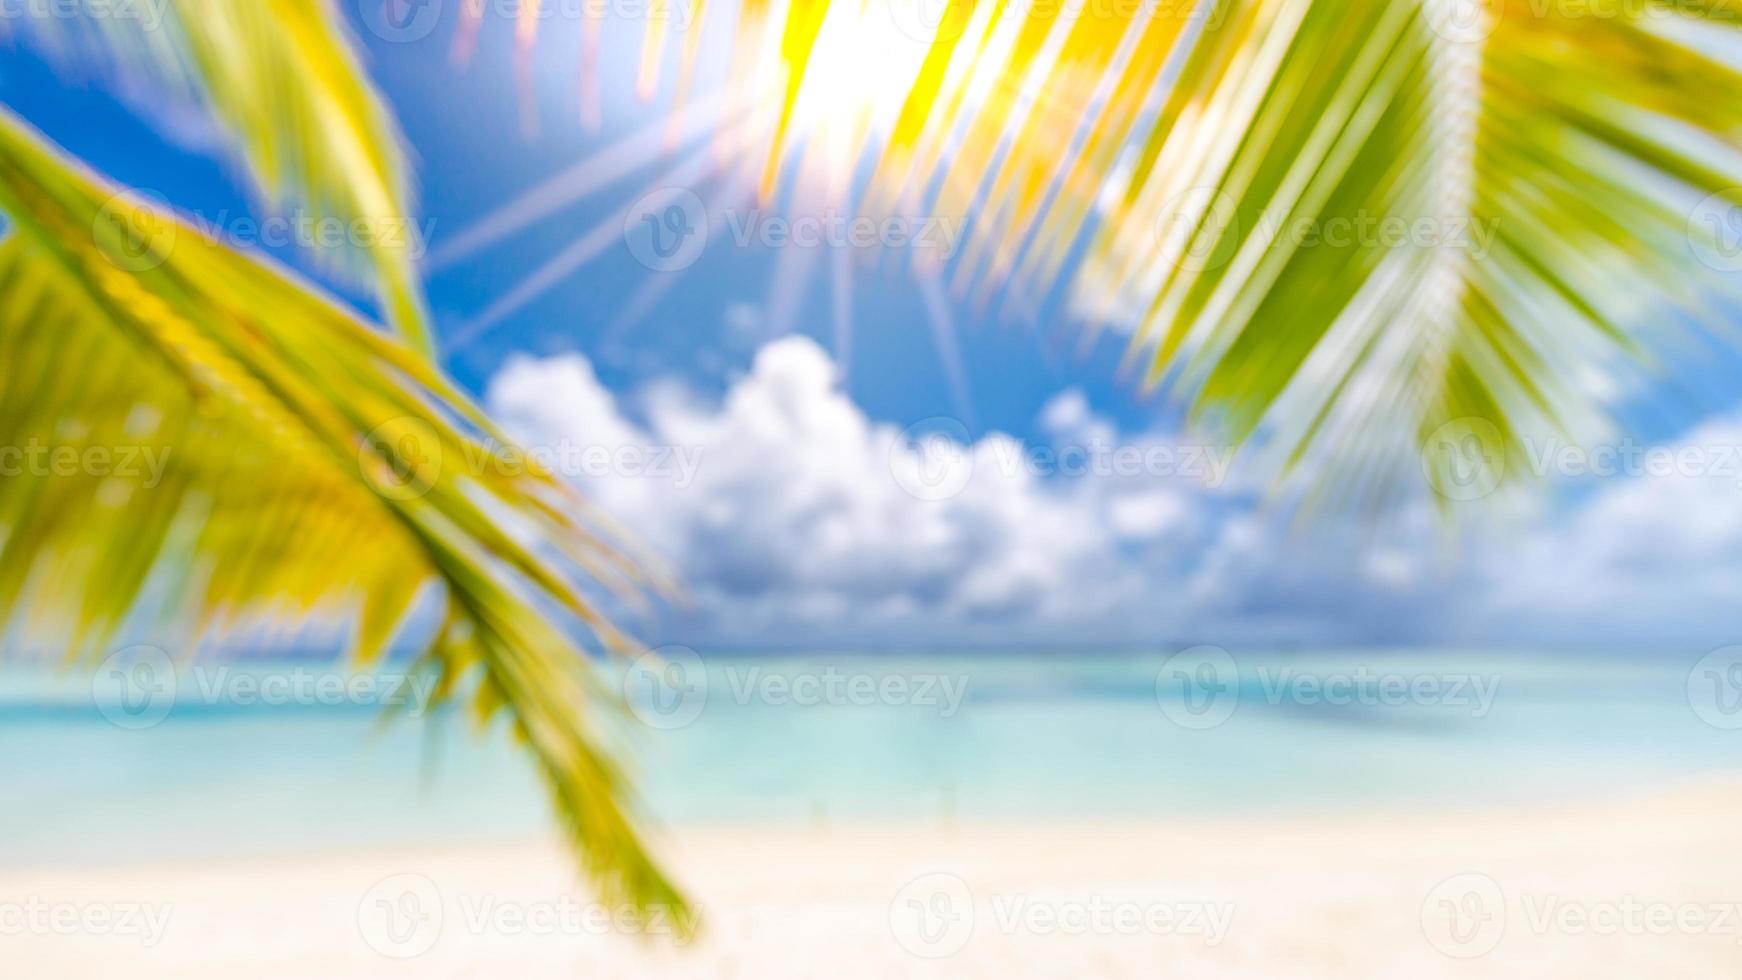 schöner unscharfer strand, grüner palmenbaum, sonniges wetter, sonnenstrahlen mit blauem meerblick und horizont. tropische strandlandschaft für sommerferien tourismusbanner, unschärfe bokeh konzept verwenden websitevorlage foto